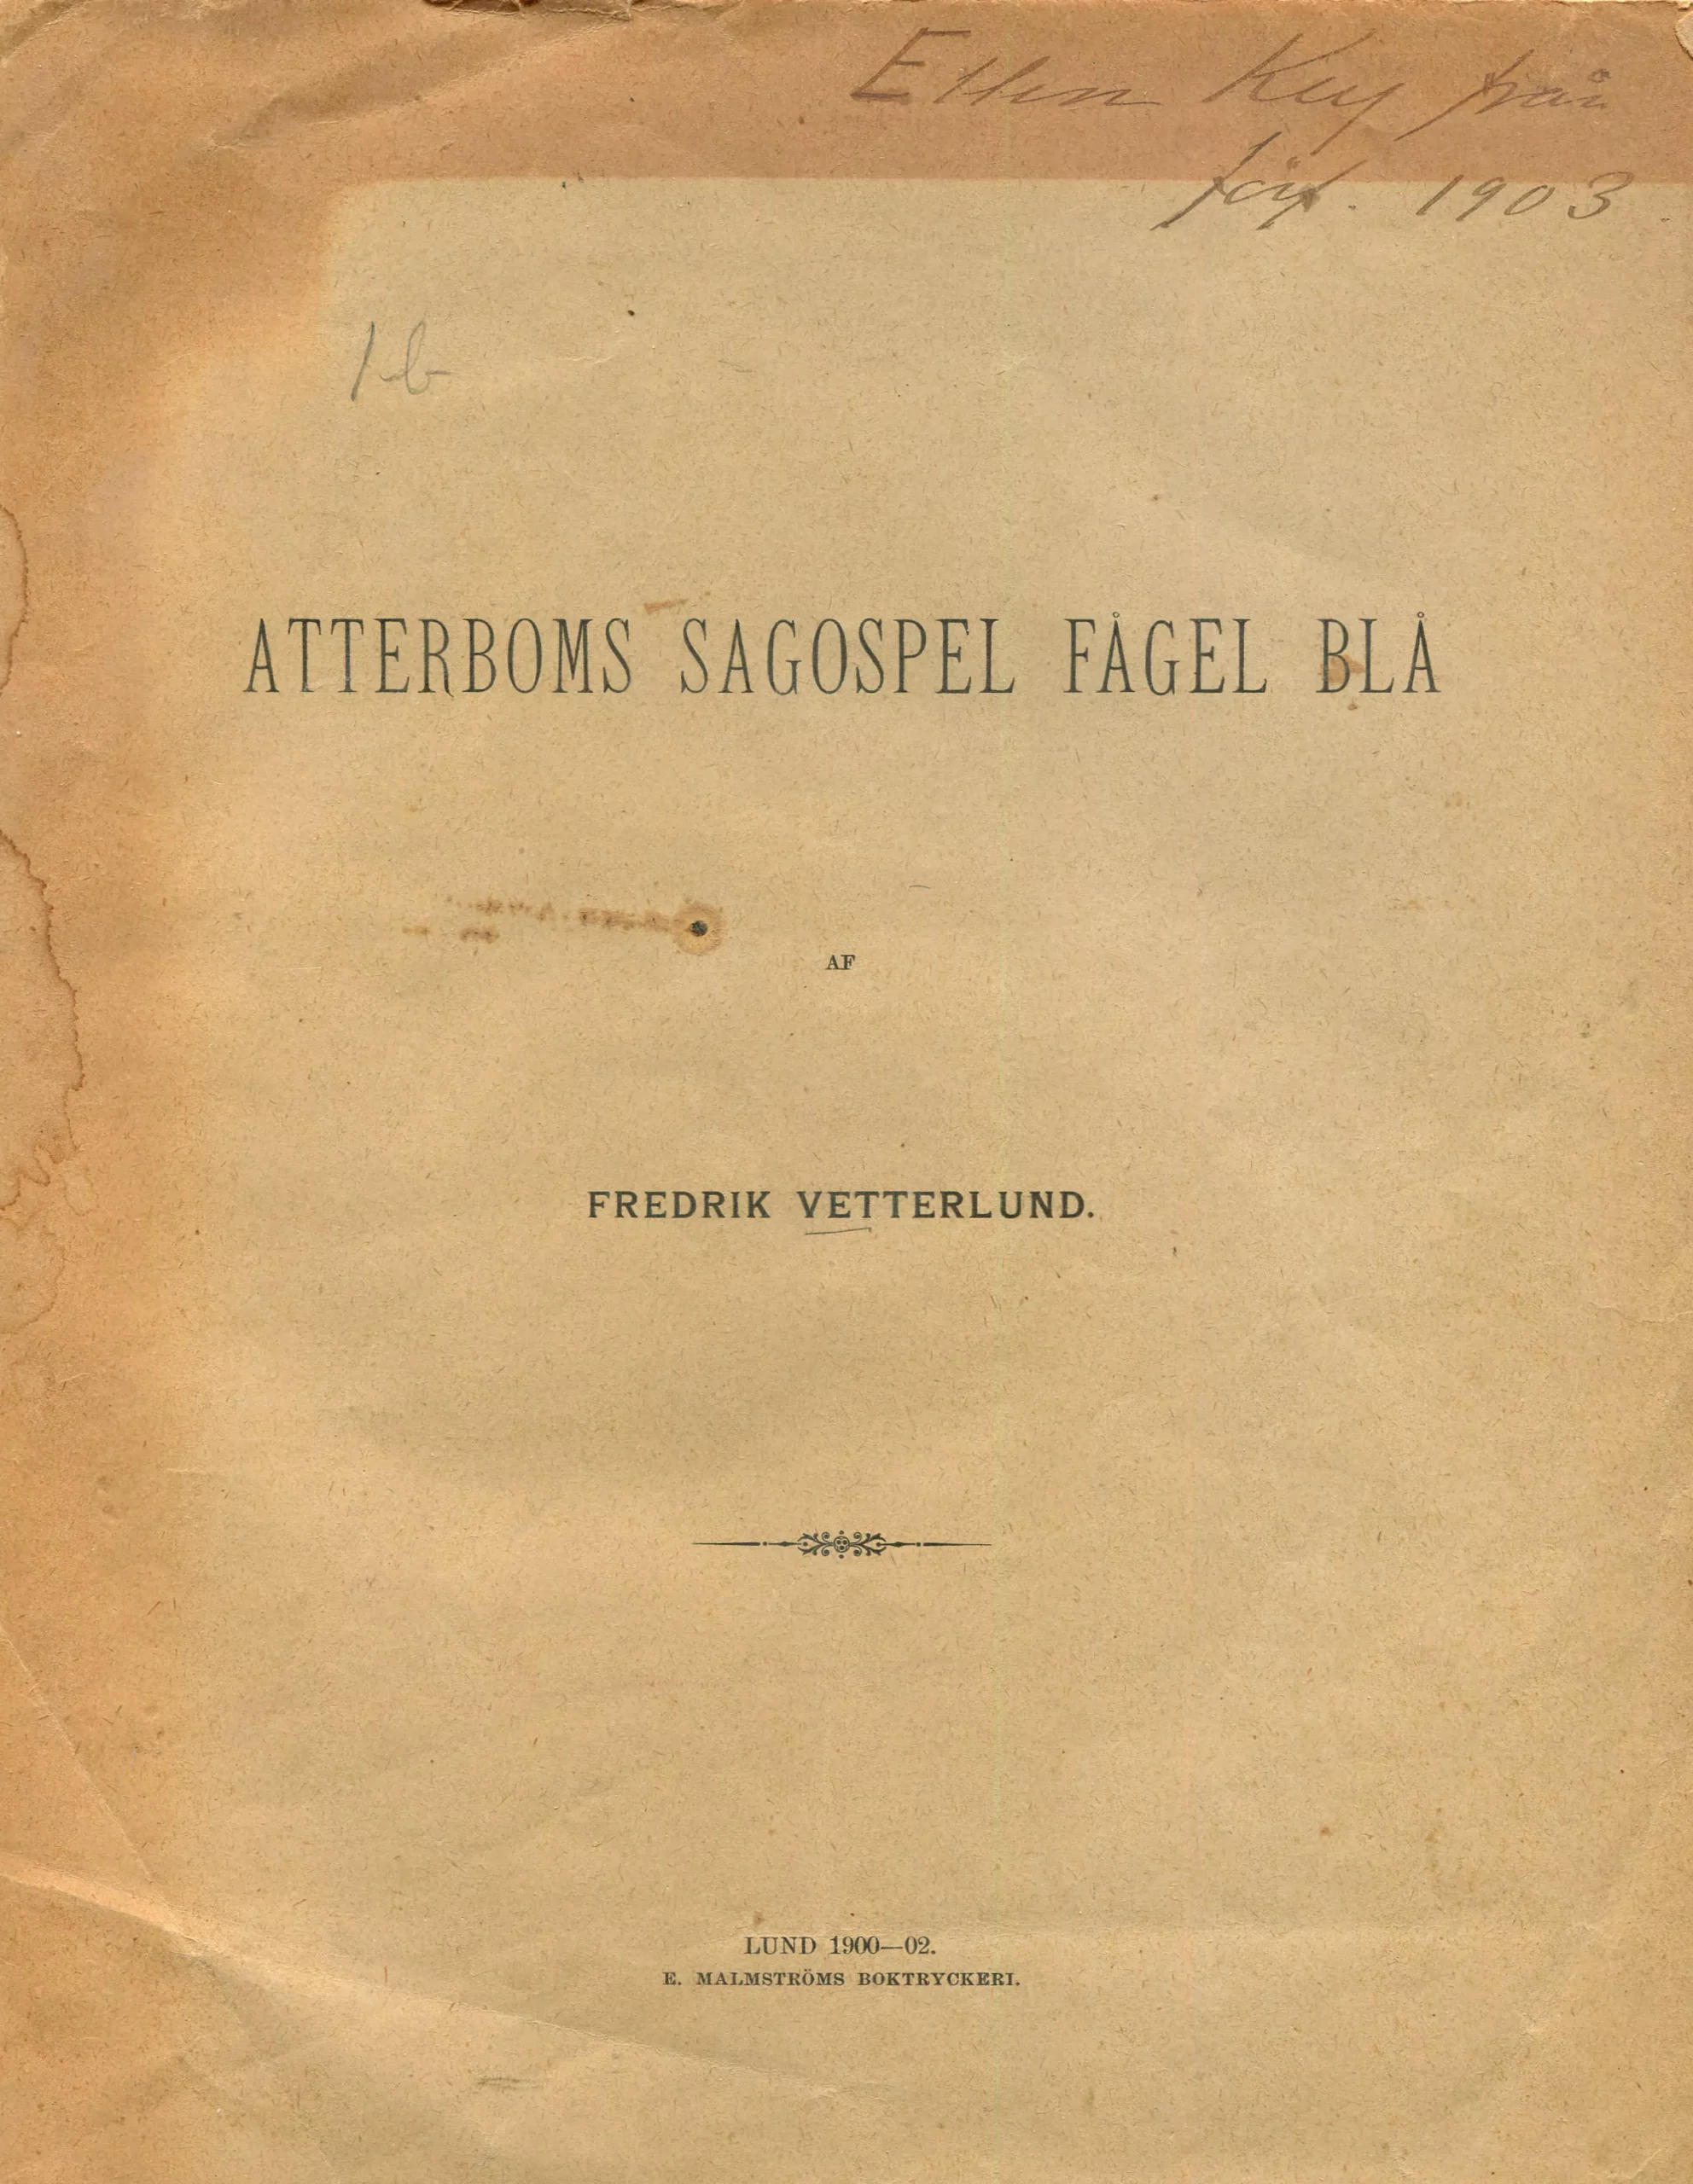 Atterboms sagospel Fågel blå, Lund 1900-1902